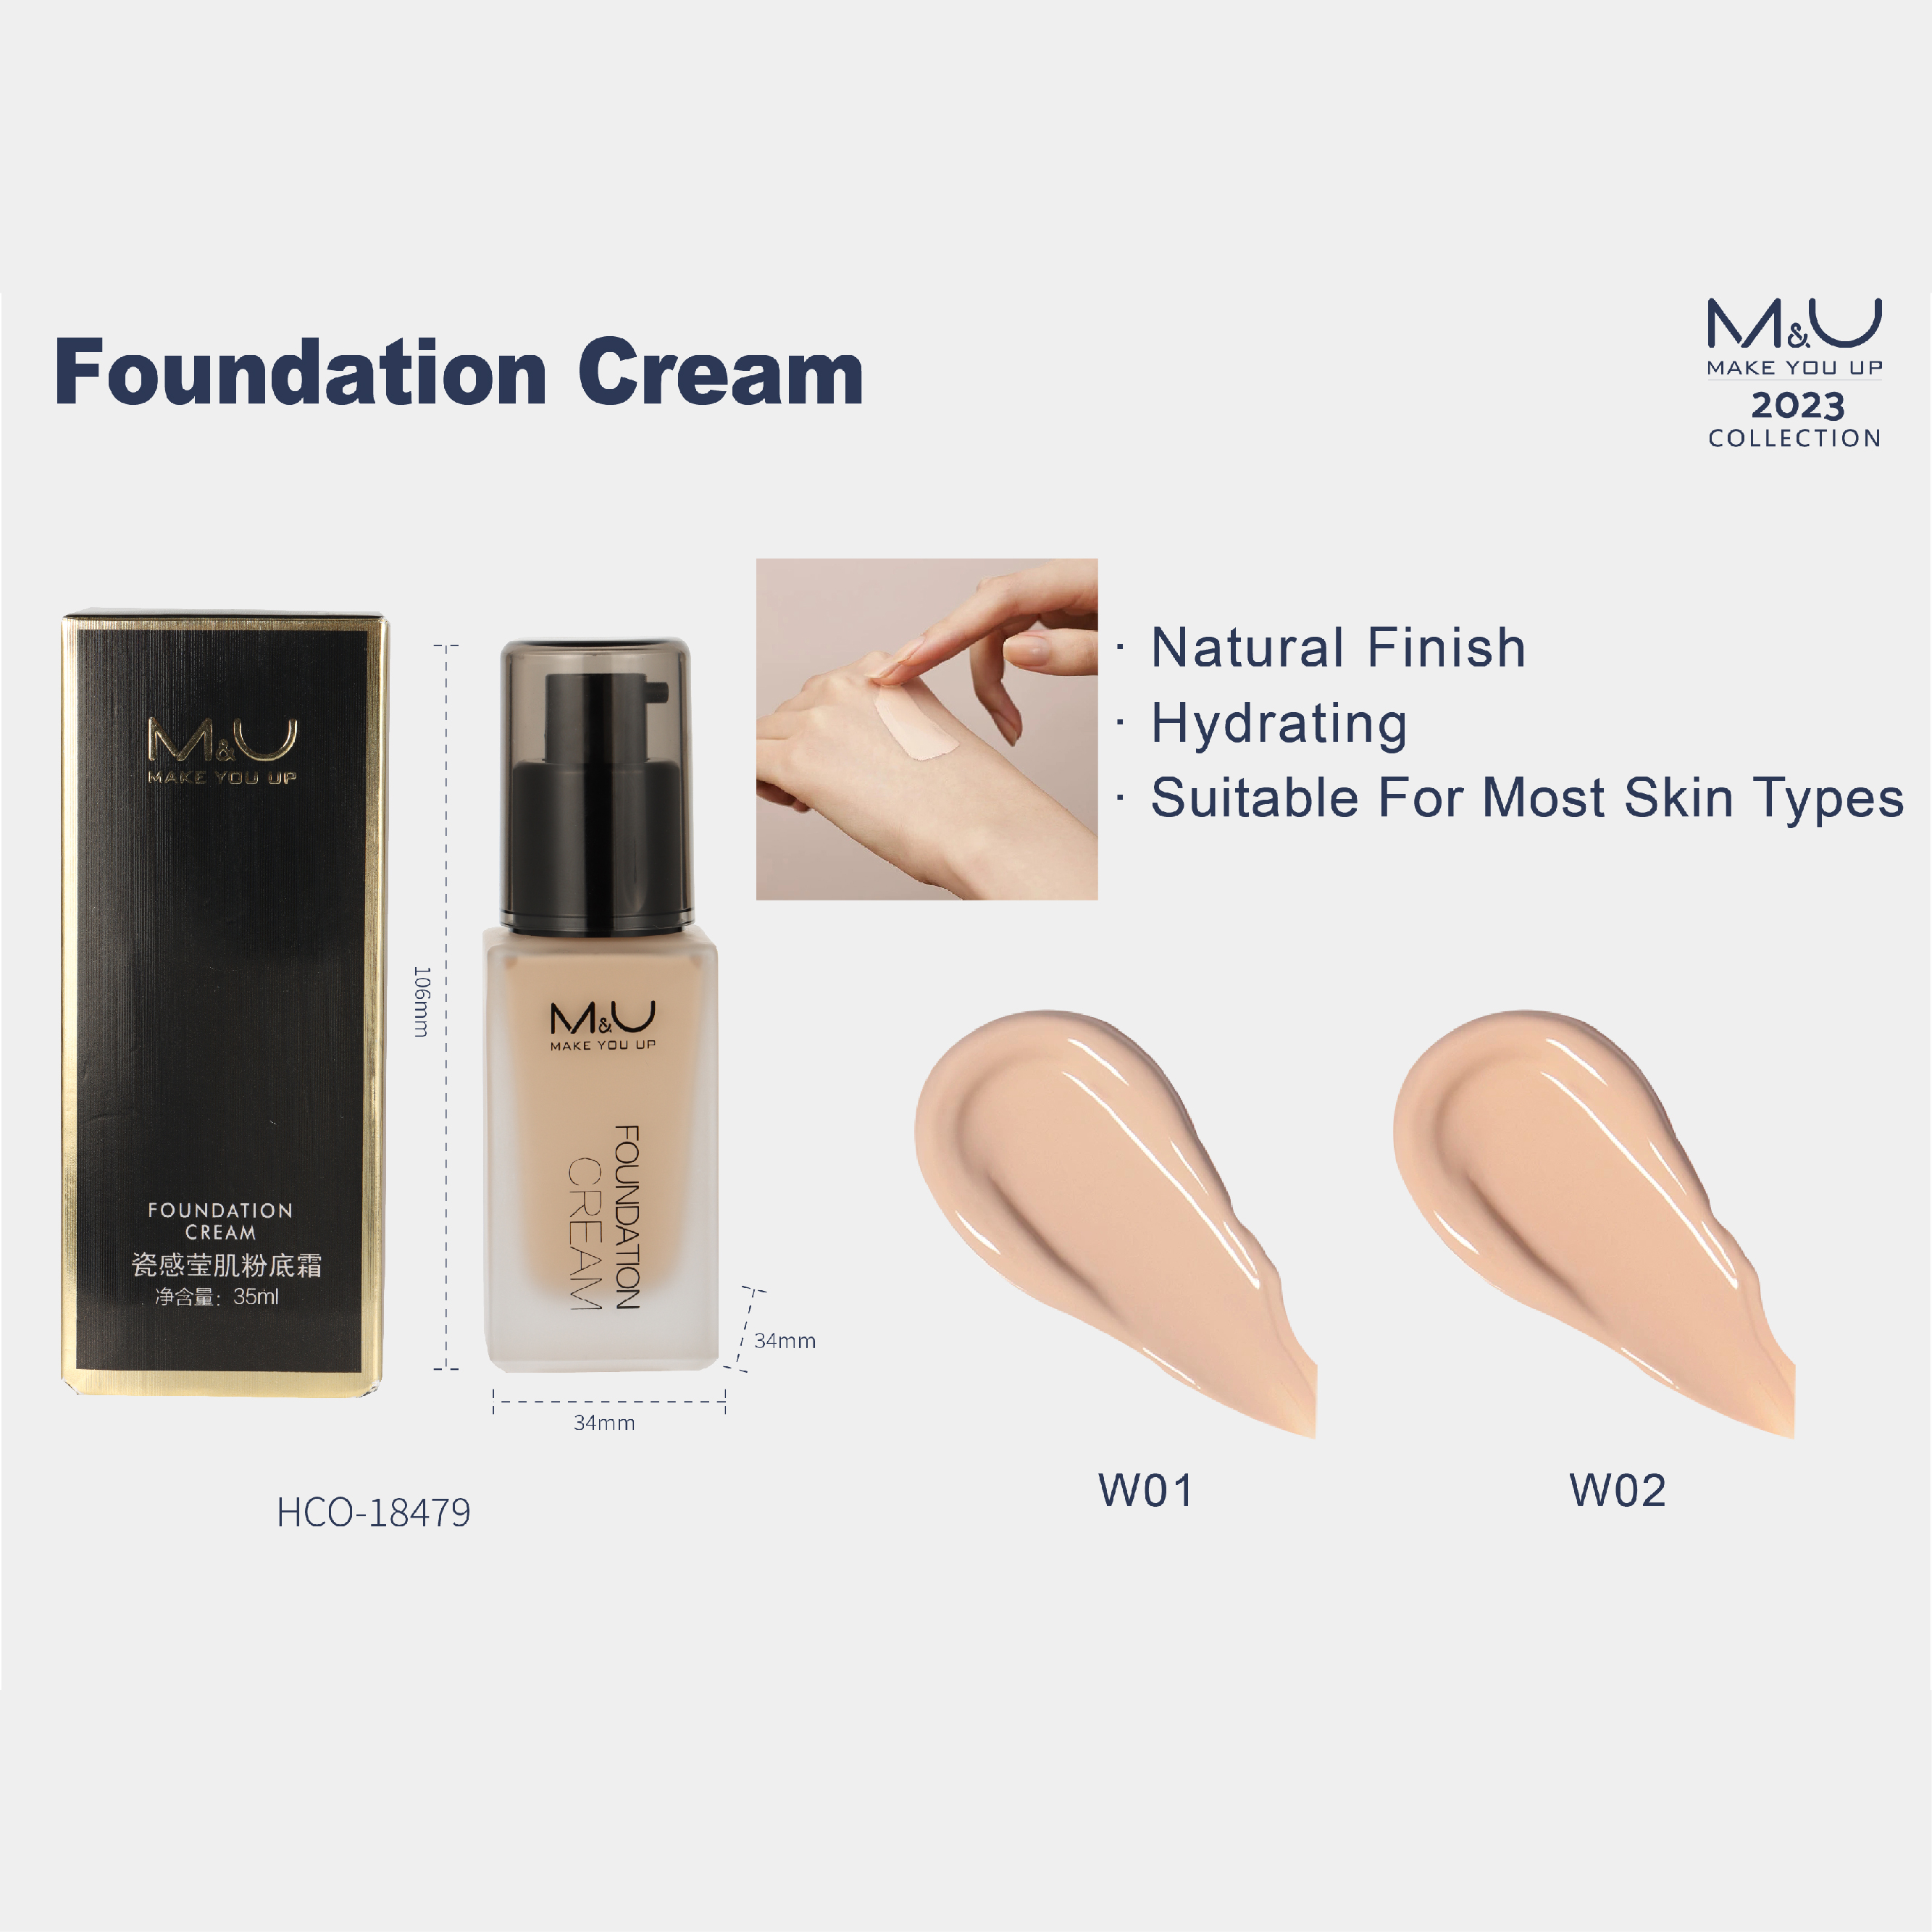 Foundation Cream